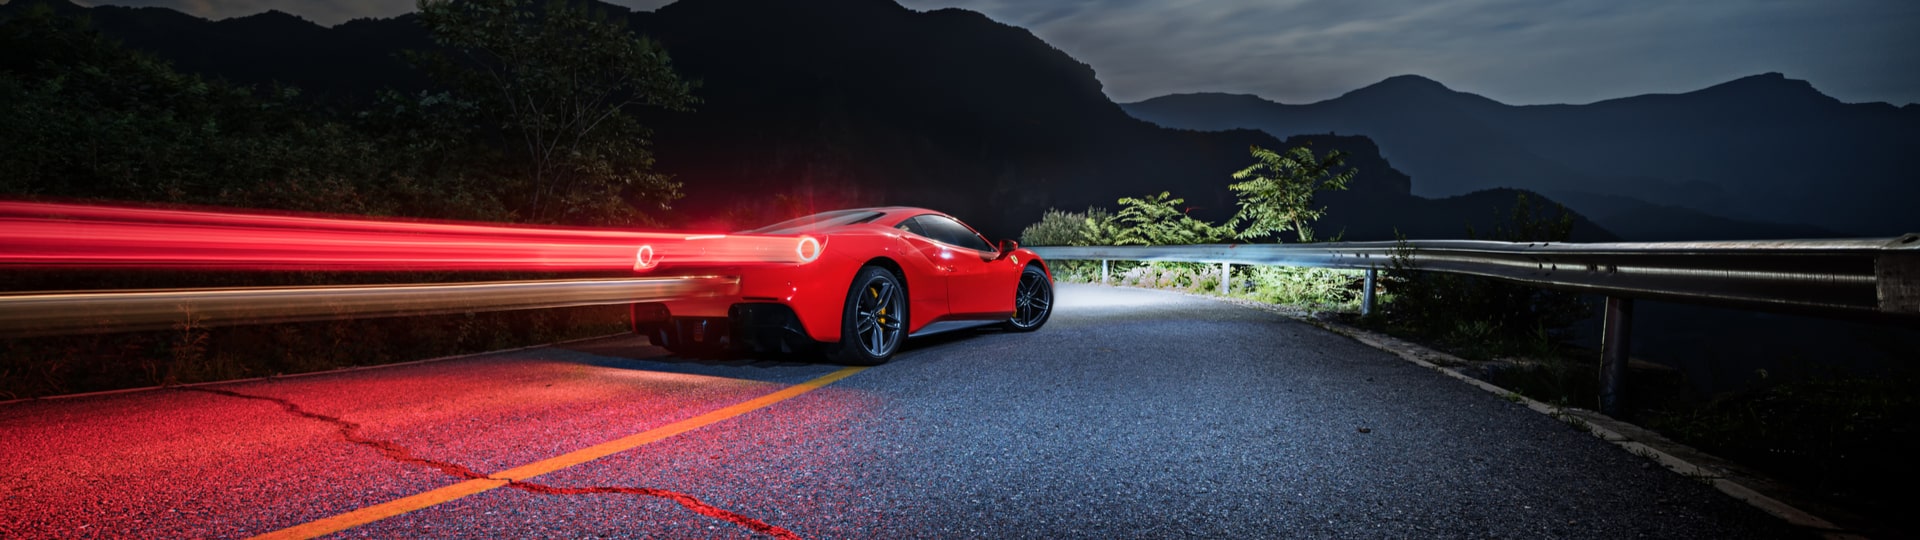 Automobilka Ferrari loni zvýšila zisk i tržby